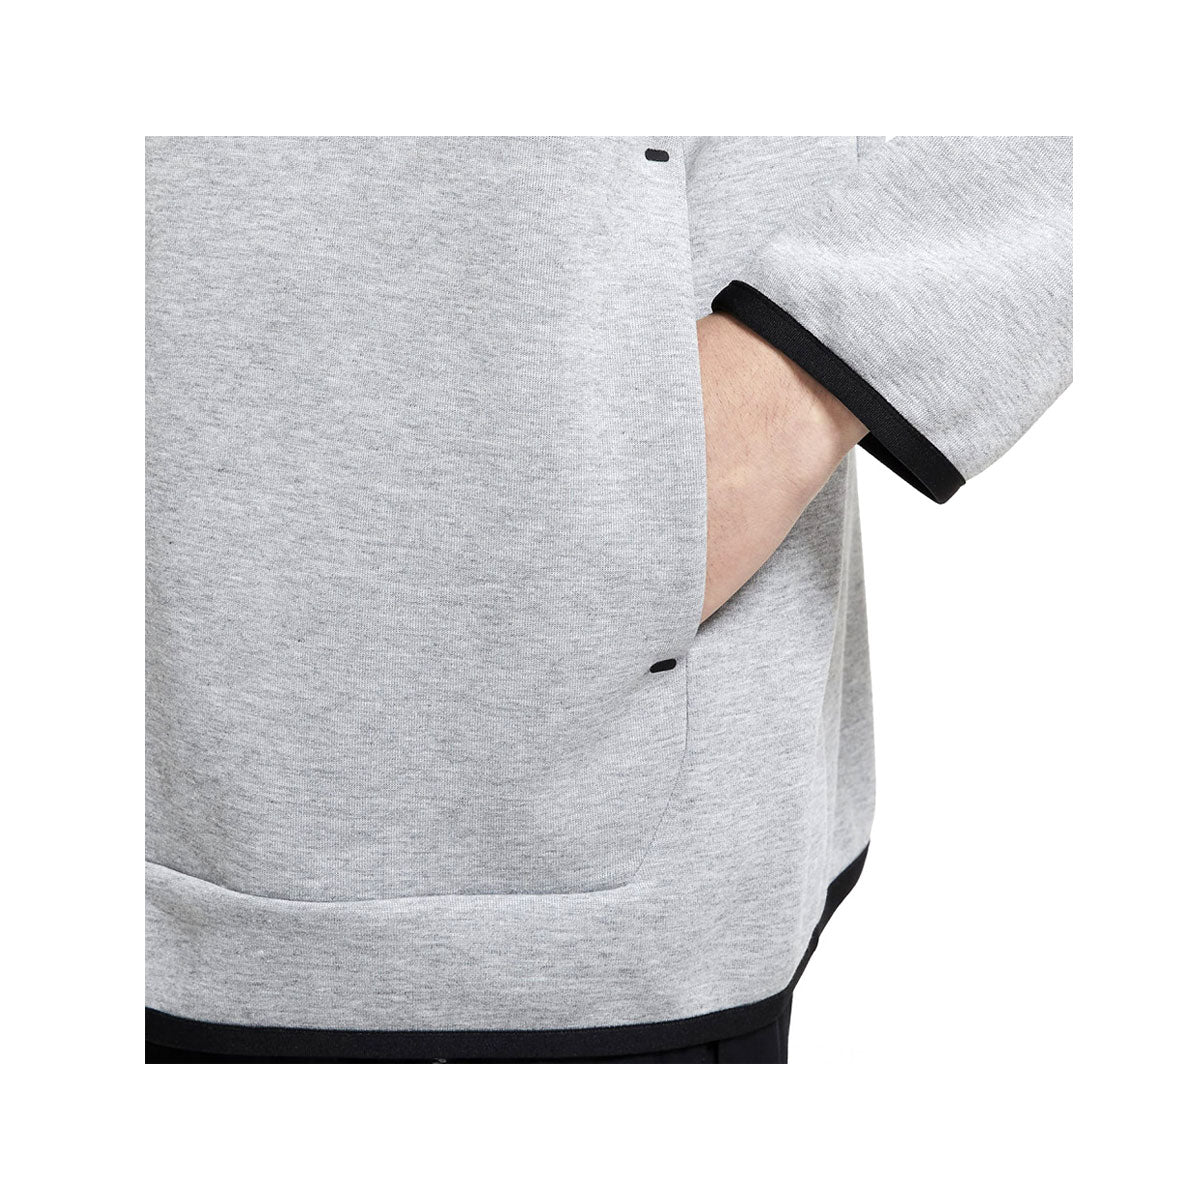 Nike Men's Sportswear Tech Fleece Zip-Up Hoodie